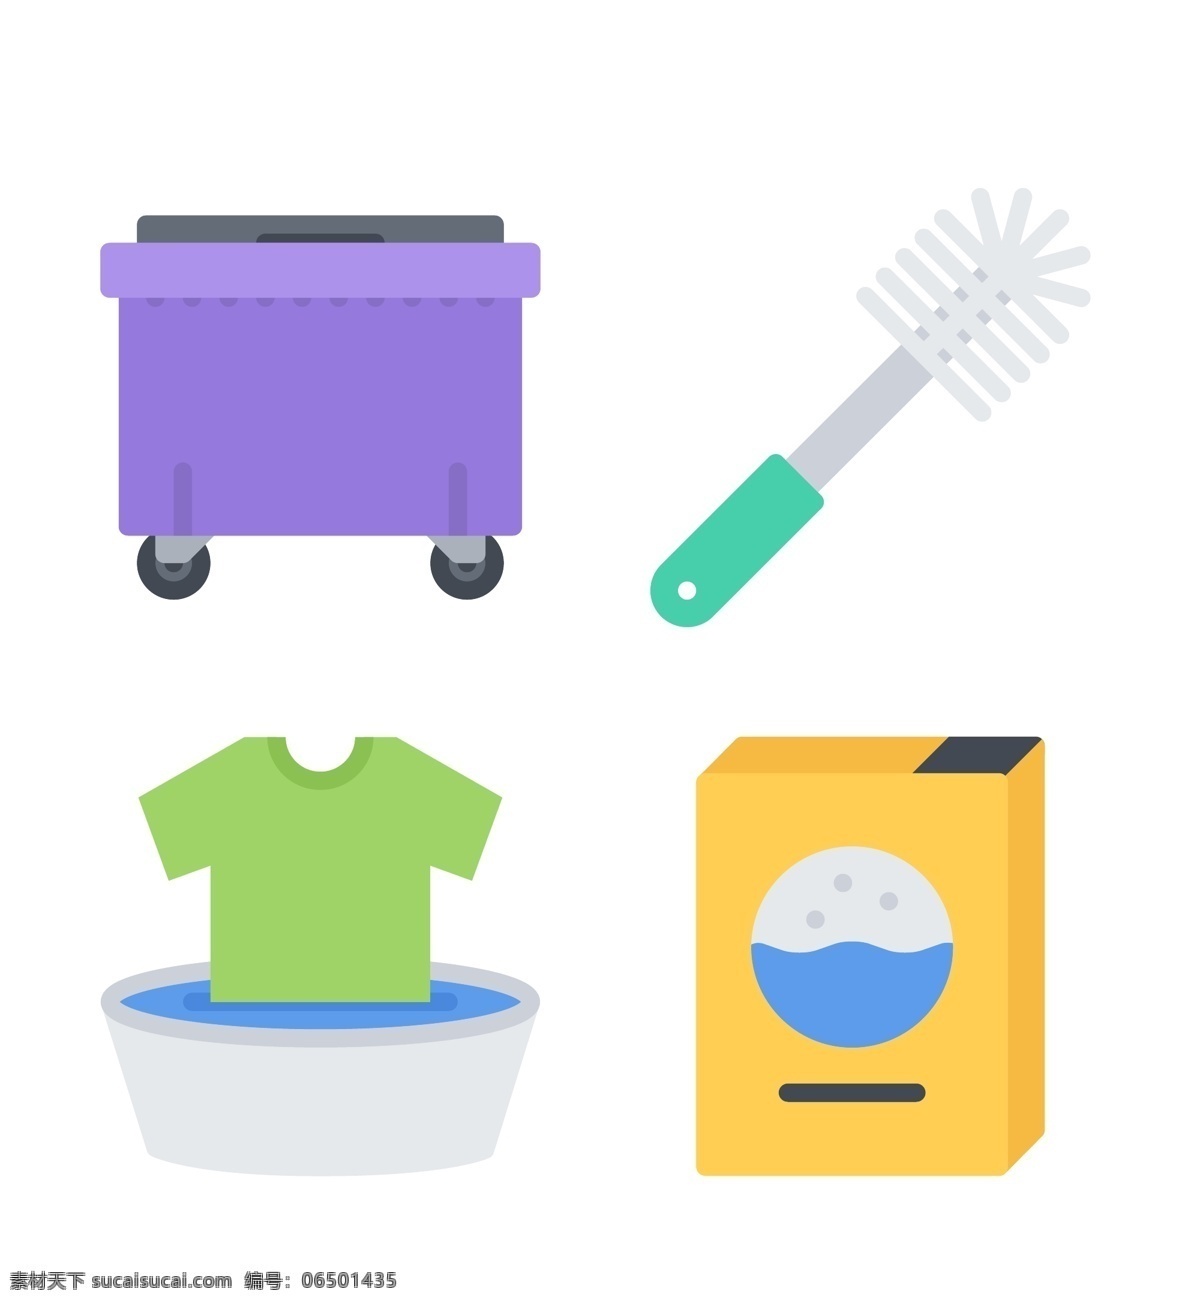 职业 icon 图标 表情图标 创意图标 清洁工 洗衣 打扫 图标下载 网页图标 图标设计